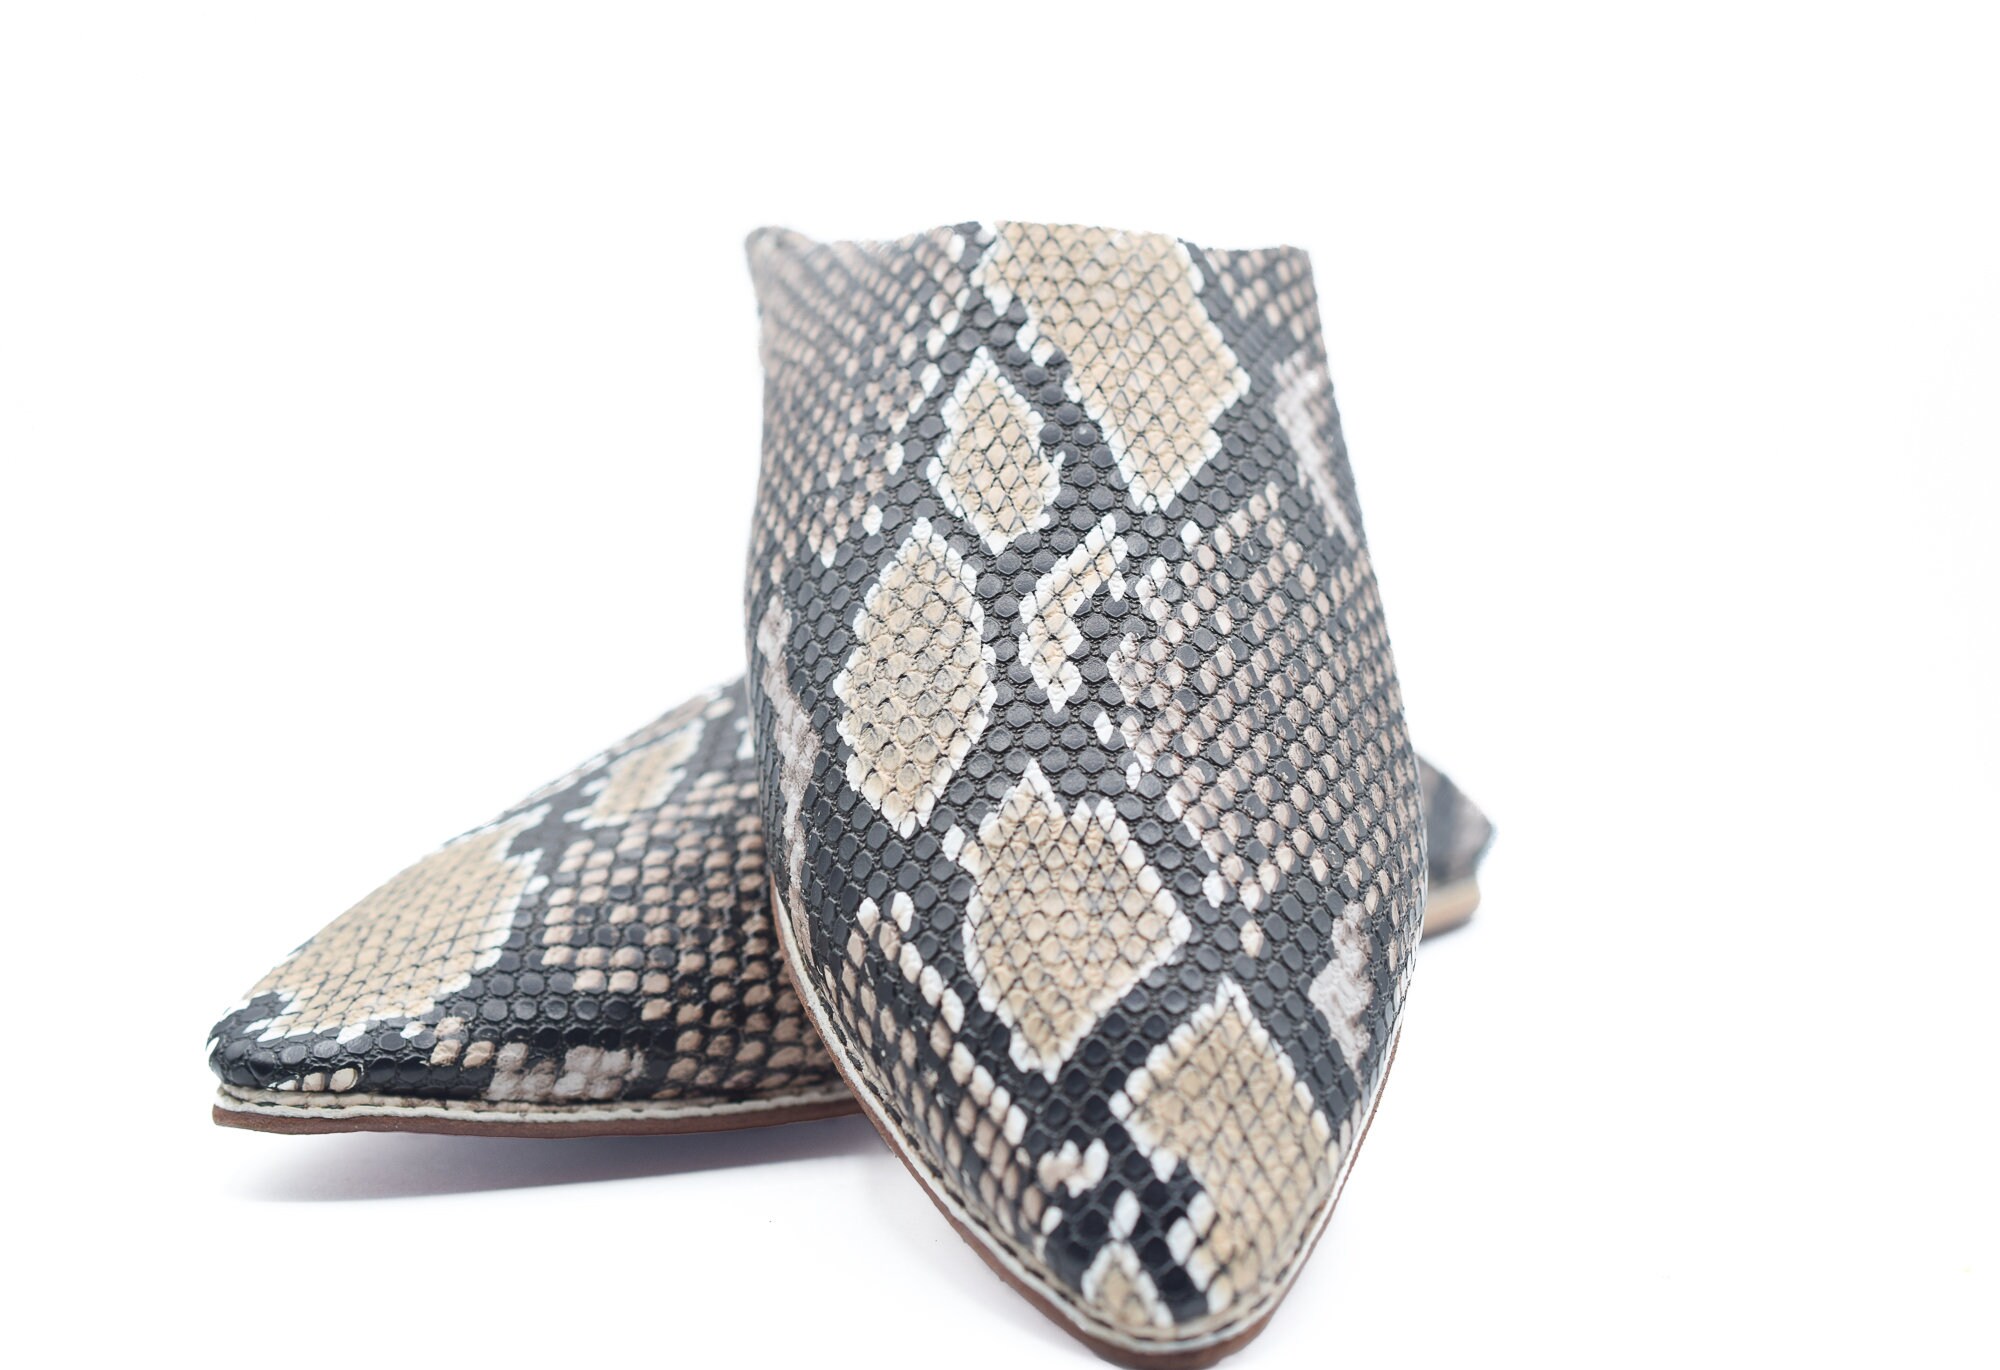 Moroccan snake skin slipper for men python designer slippers | Etsy